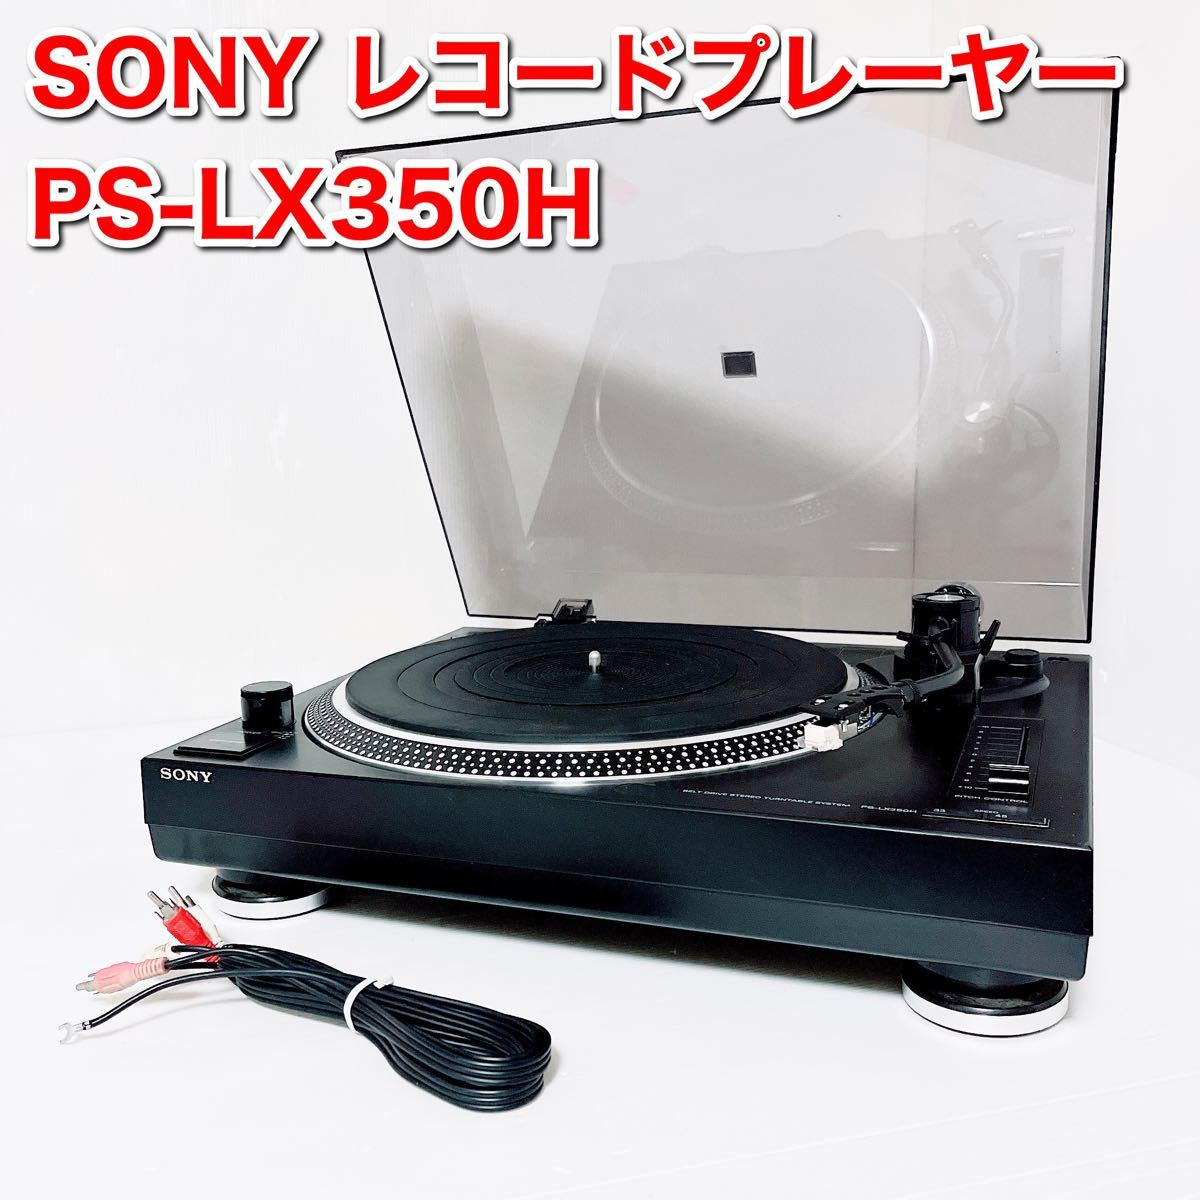 SONY レコードプレーヤー PS-LX350H ターンテーブル